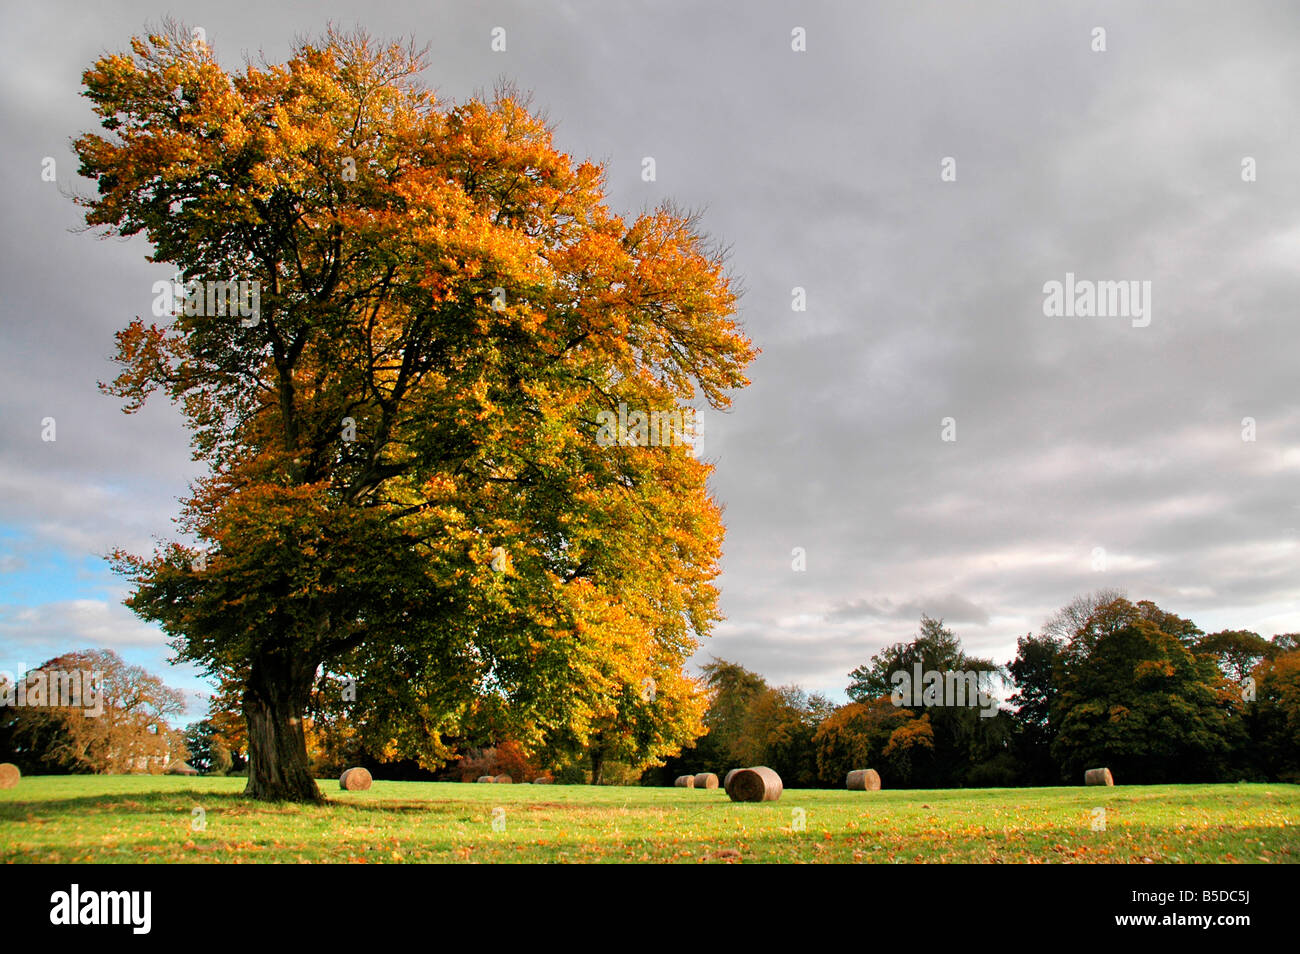 Grand soleil, arbre d'automne dans un champ de bottes de foin. Banque D'Images